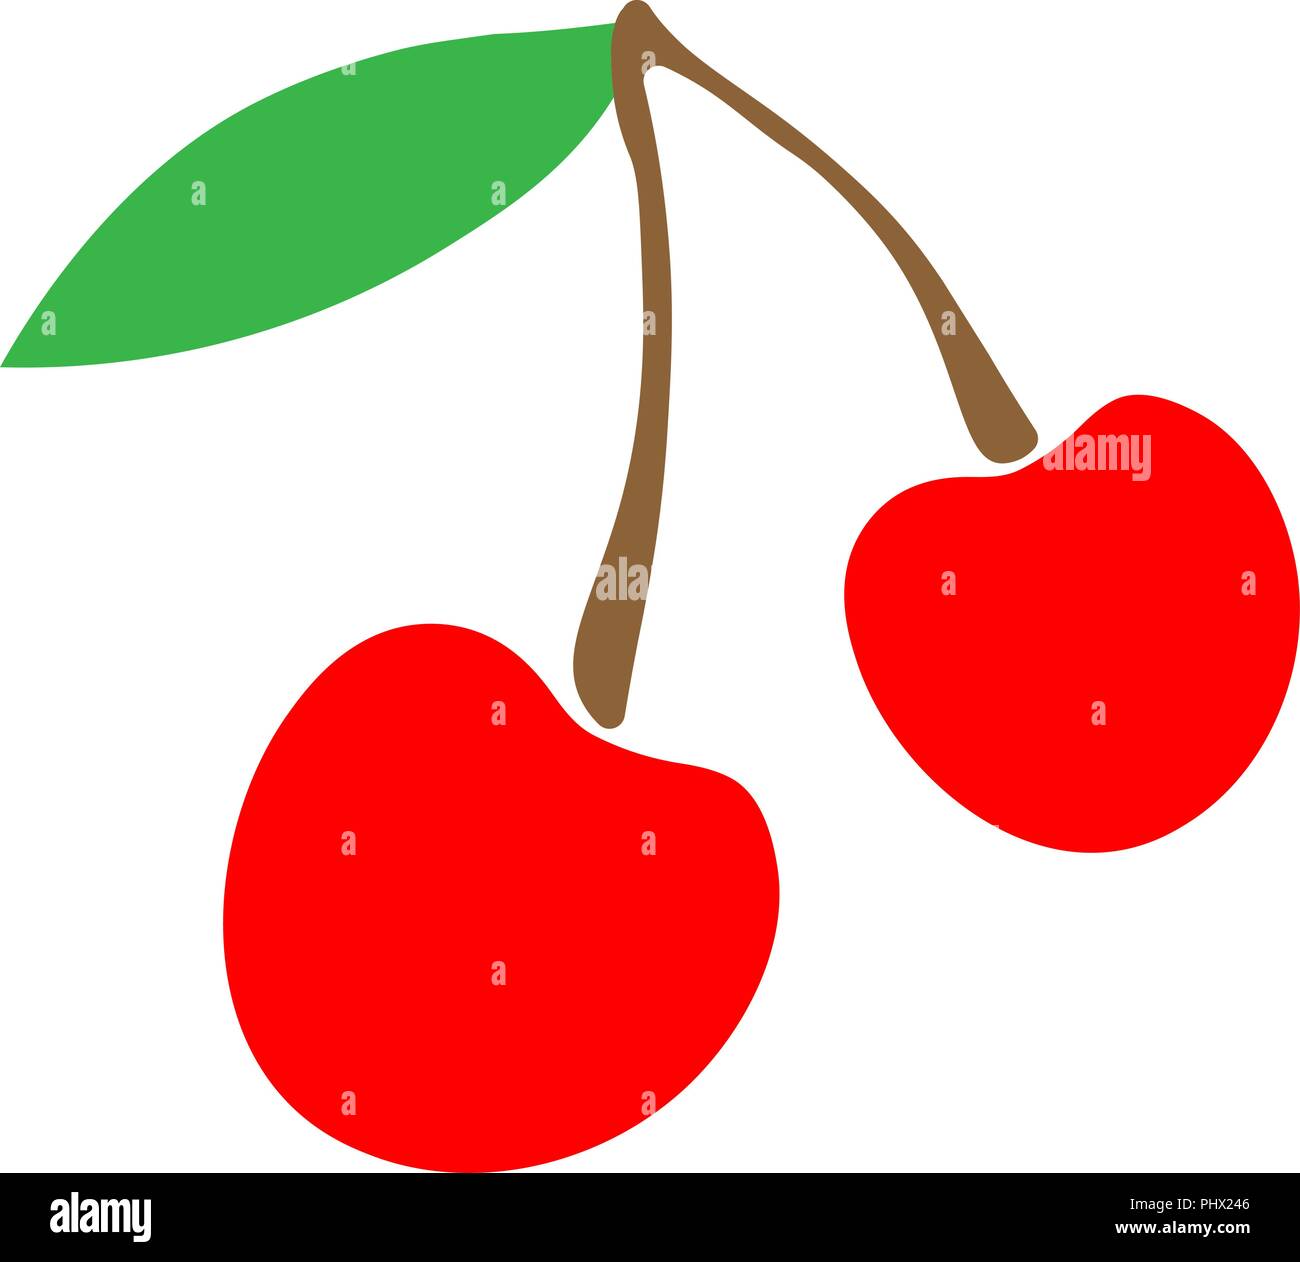 Illustrazione Vettoriale Ciliegie Logo O Di Un Adesivo Per Bambini Semplice Disegno Di Frutta A Bacca Rossa Immagine E Vettoriale Alamy